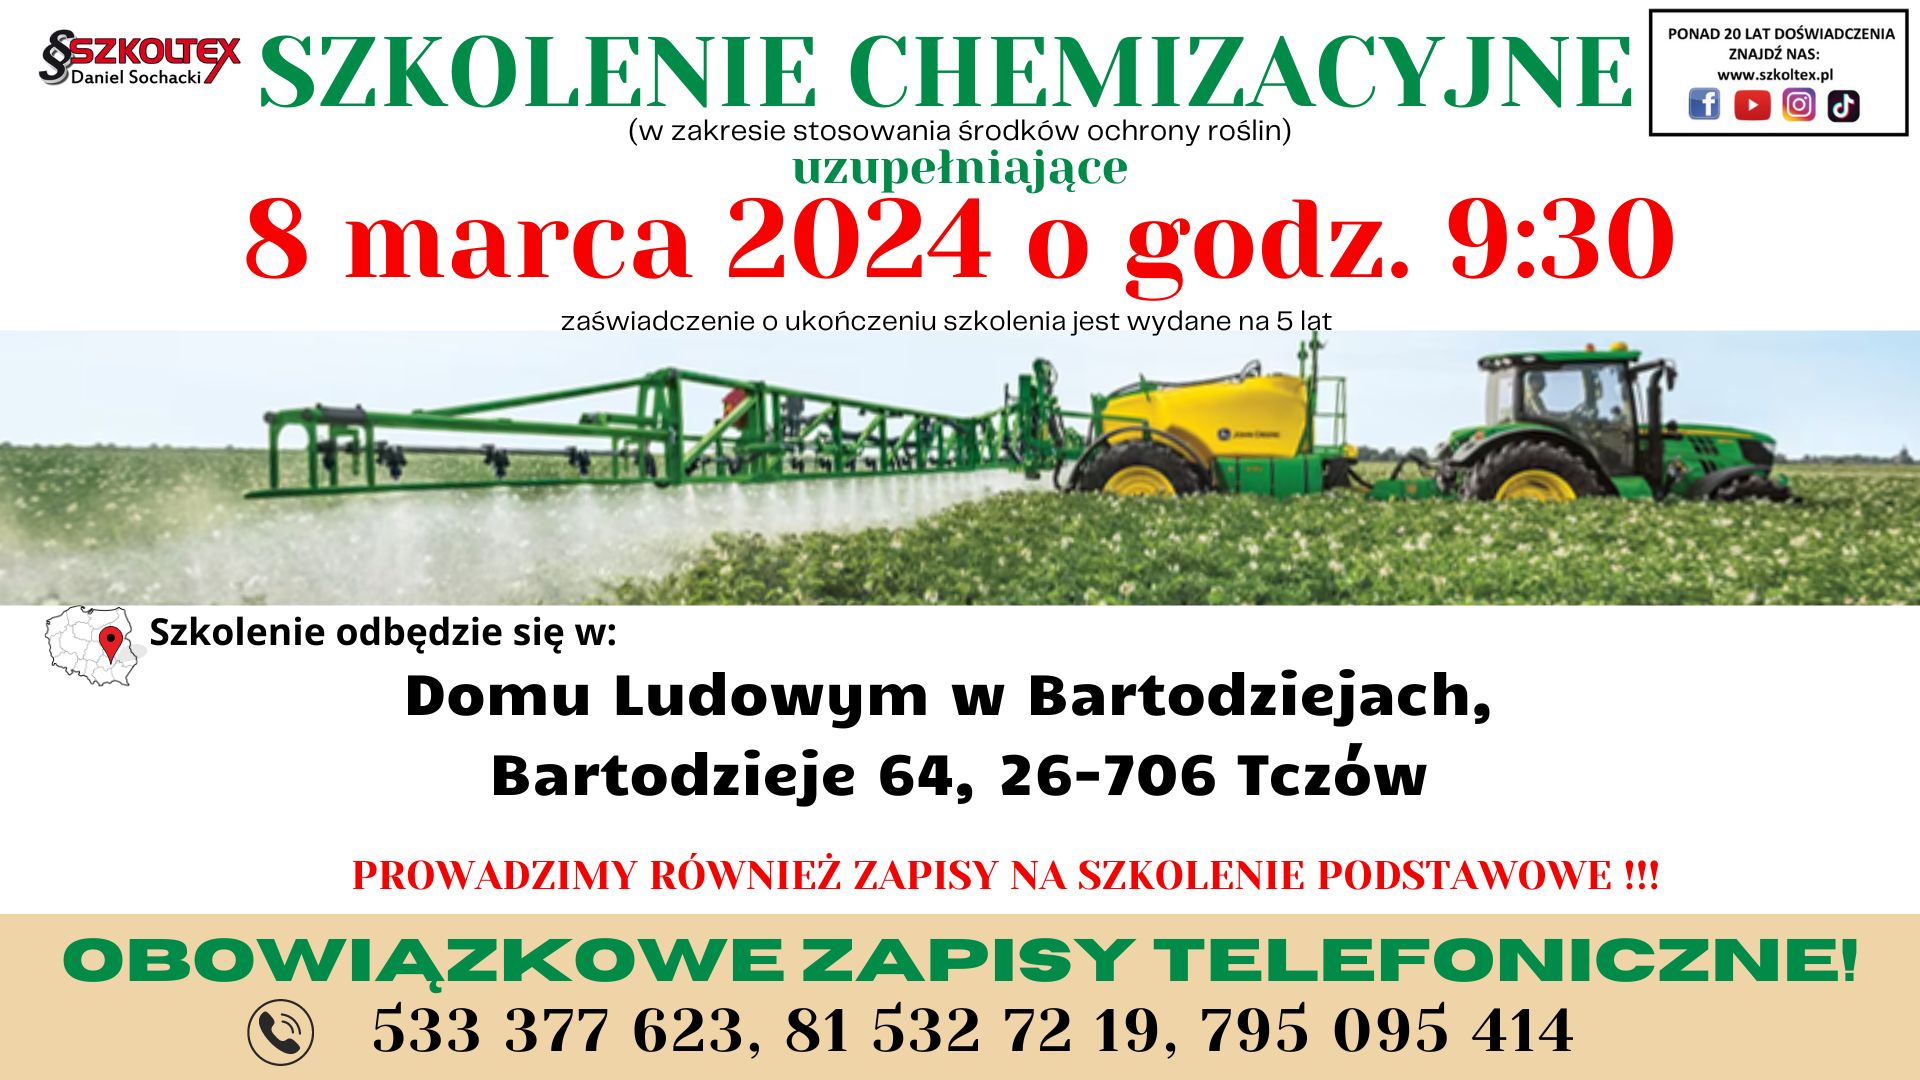 Szkolenie chemizacyjne 8 marca 2024 r. w Domu Ludowym w Bartodziejach, Bartodzieje 64, 26-706 Tczów. W tle traktor z opryskiwaczem na polu.